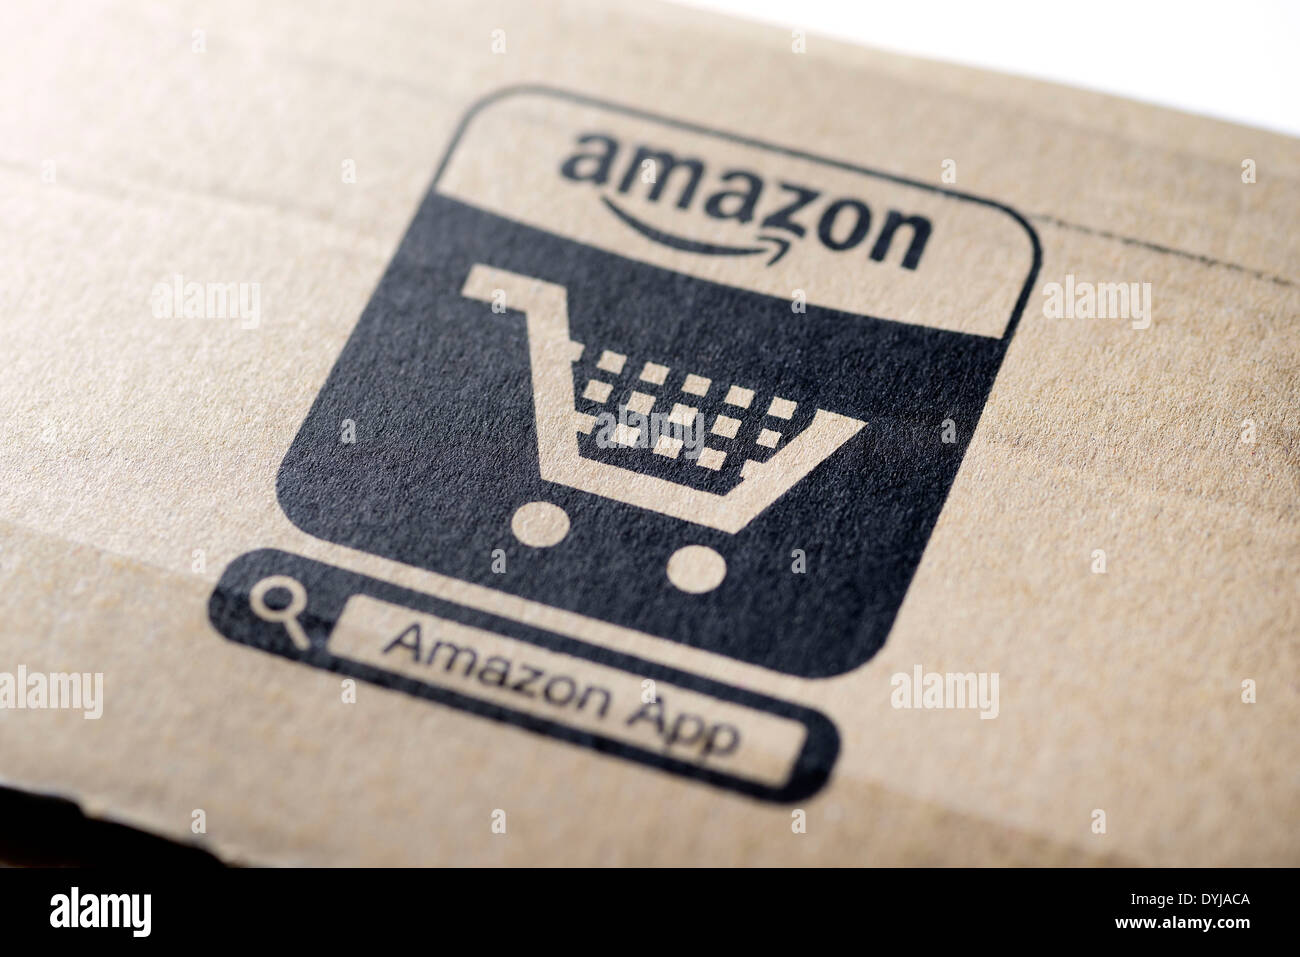 Amazon emballage avec panier, Amazon-Verpackung mit Einkaufswagen Banque D'Images